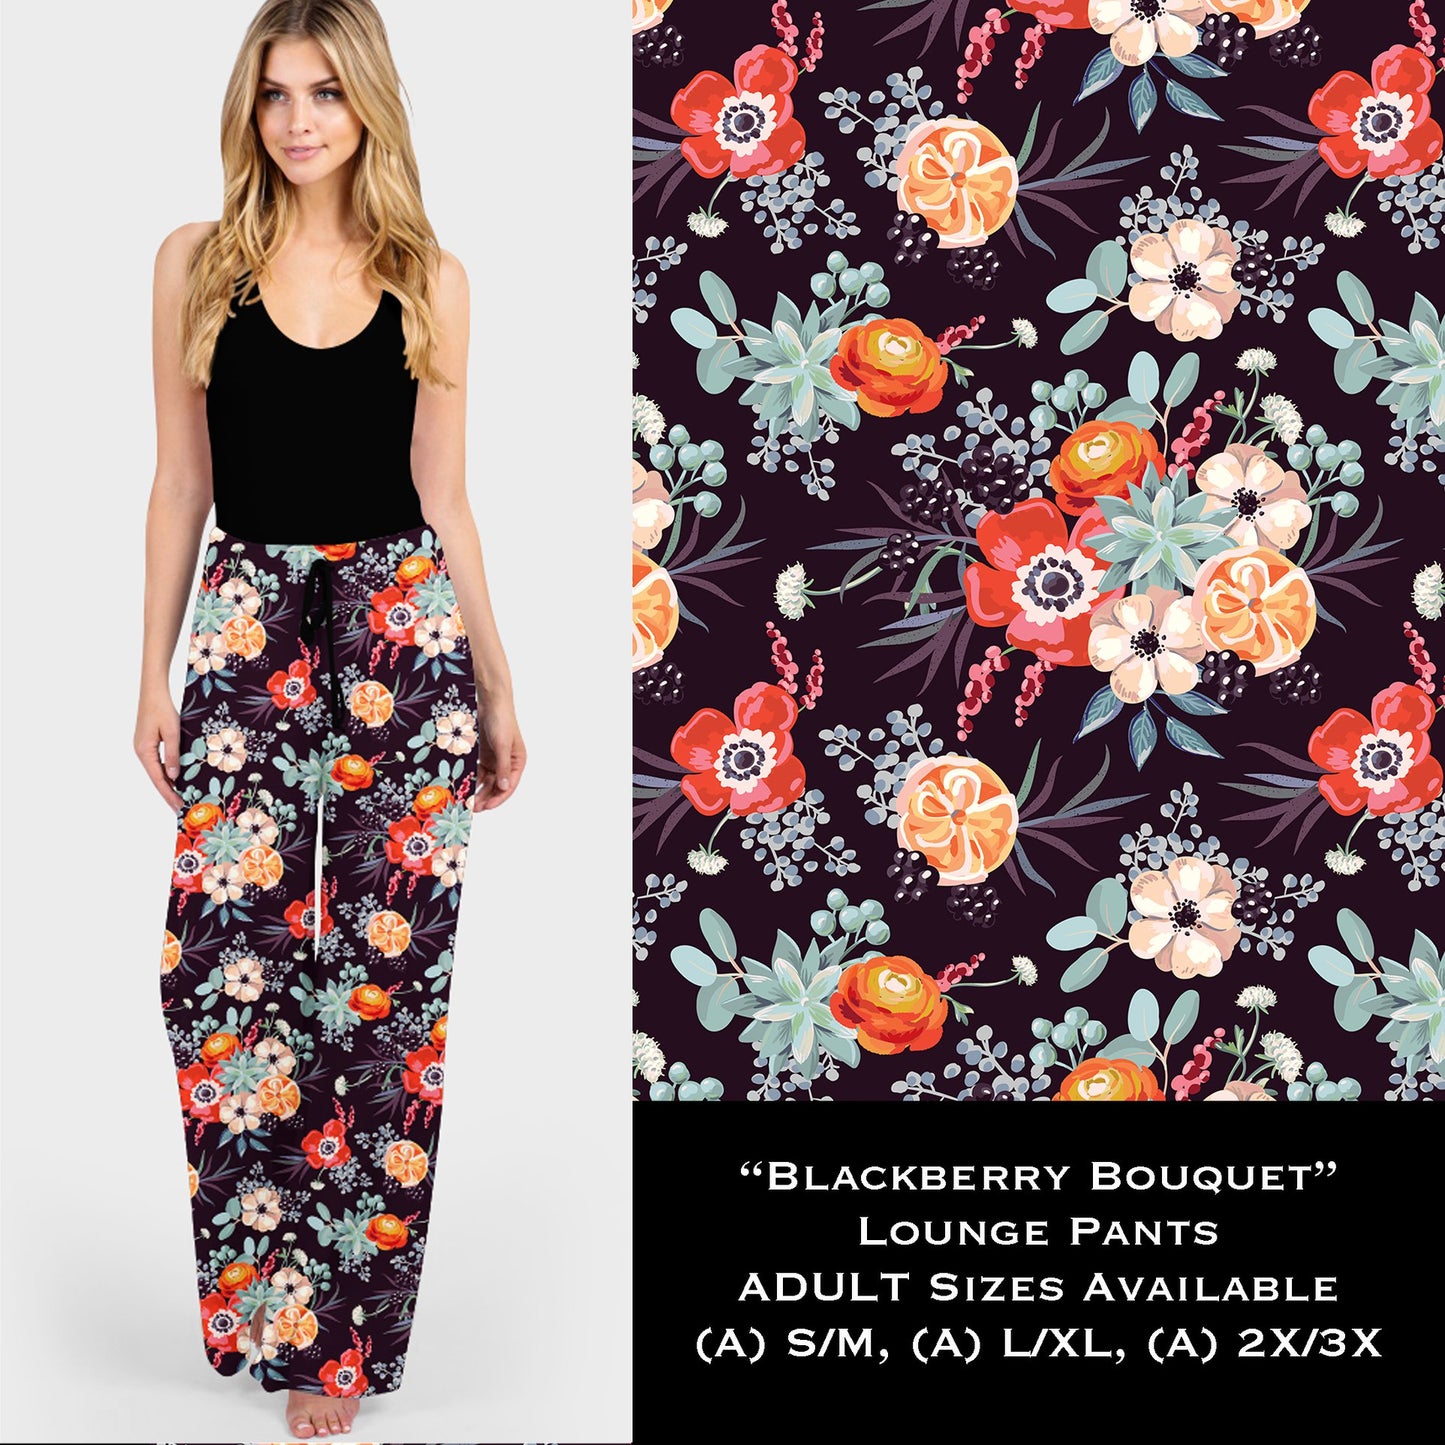 Blackberry Bouquet - Lounge Pants